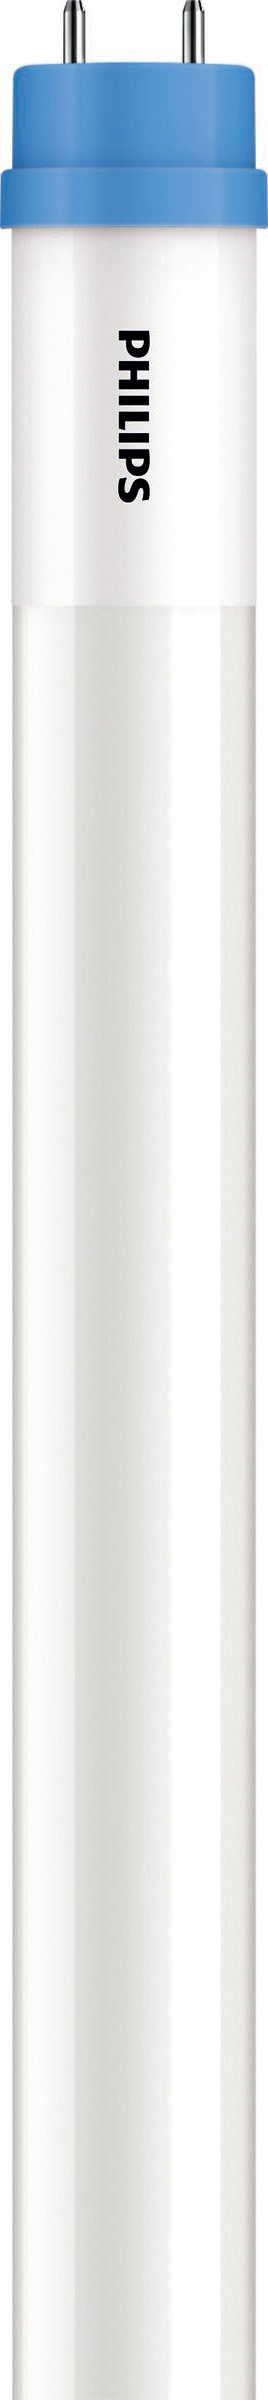 Philips Lighting LED-Tube T8 KVG/VVG G13, 865, 1500mm CoreProLED #45983000